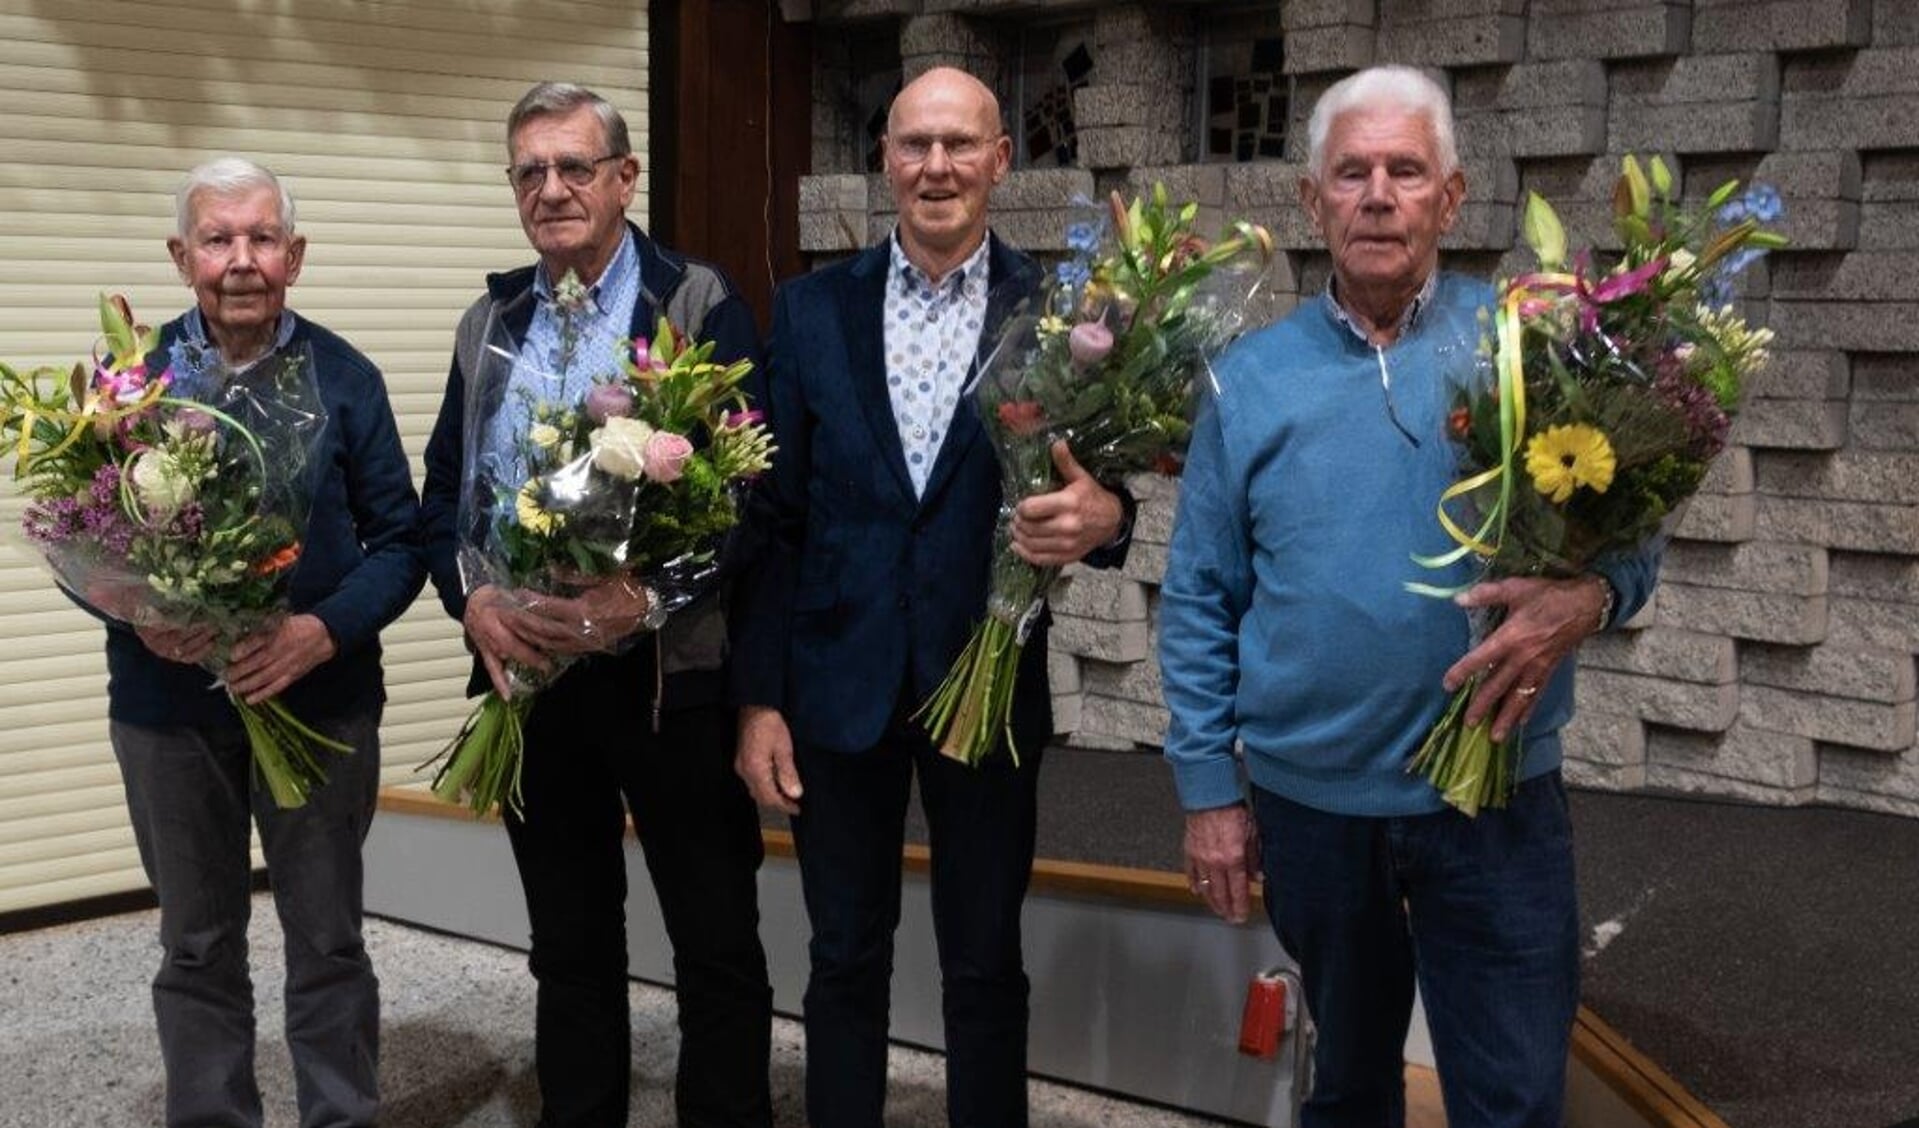 De jubilarissen. Van links naar rechts: Jaap Quartel, Jan Mostert, Gerrit Steenwijk en Koos van den Ende. (Foto: Lenie van Mannekes)